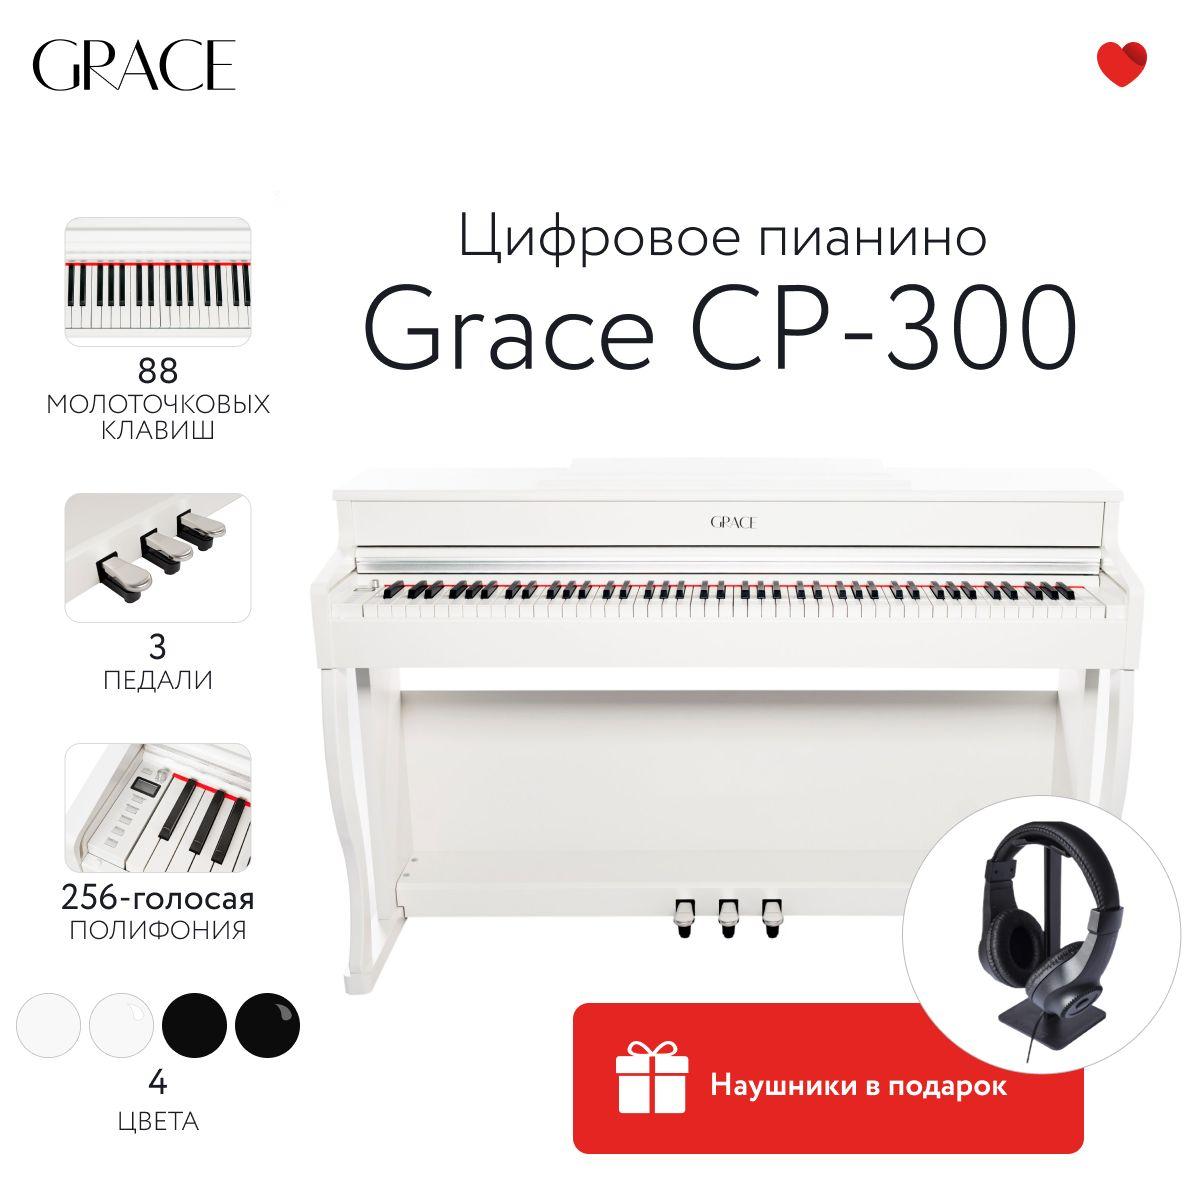 Grace CP-300 WH - Цифровое пианино в корпусе с тремя педалями